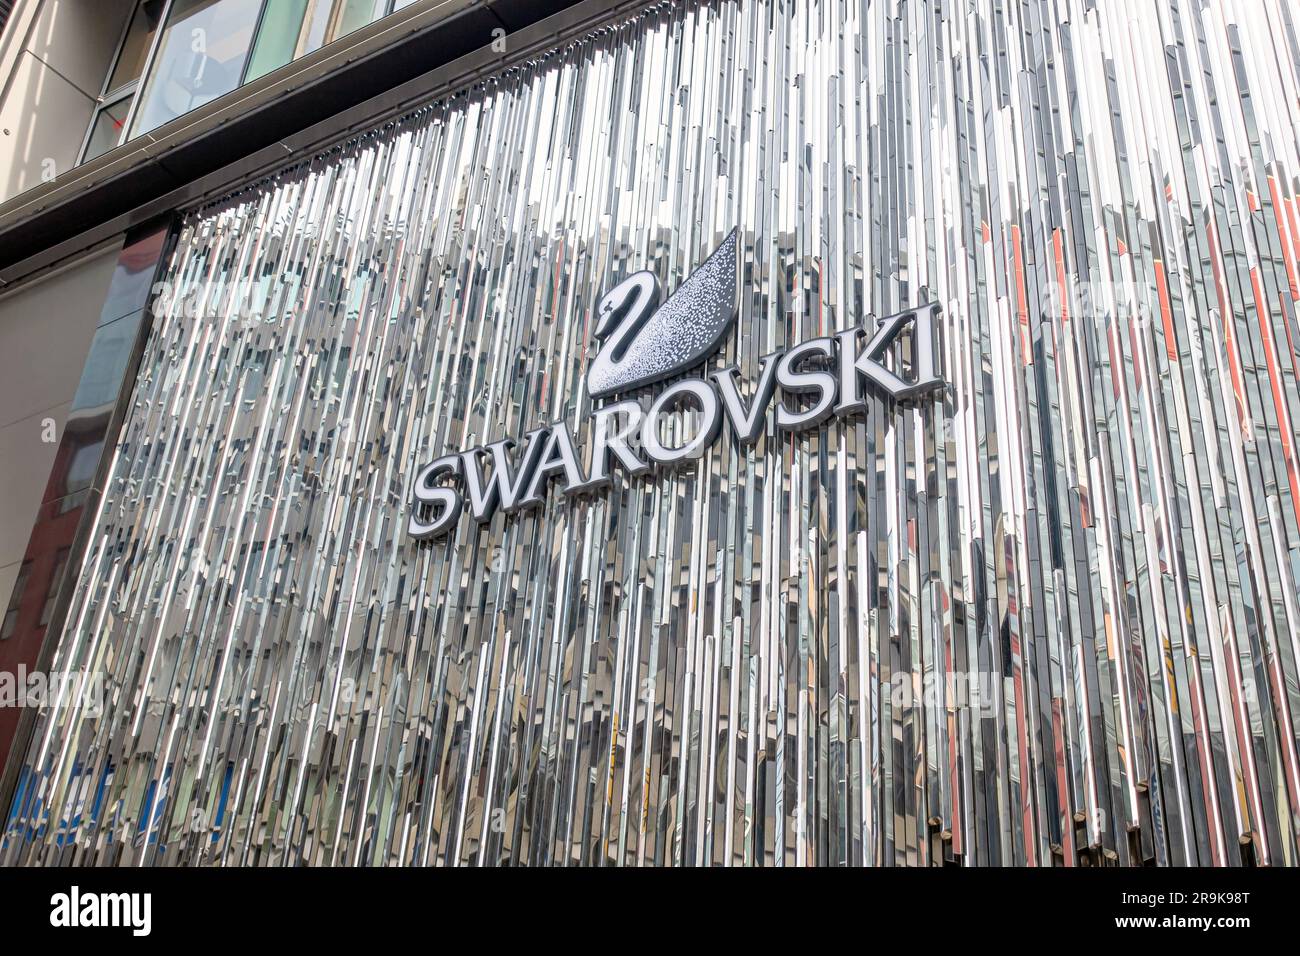 Tokio, Japan - April 2 2018: Swarovski Store-Logo. Swarovski ist ein österreichischer Glashersteller mit Sitz in Wattens, Österreich. Stockfoto